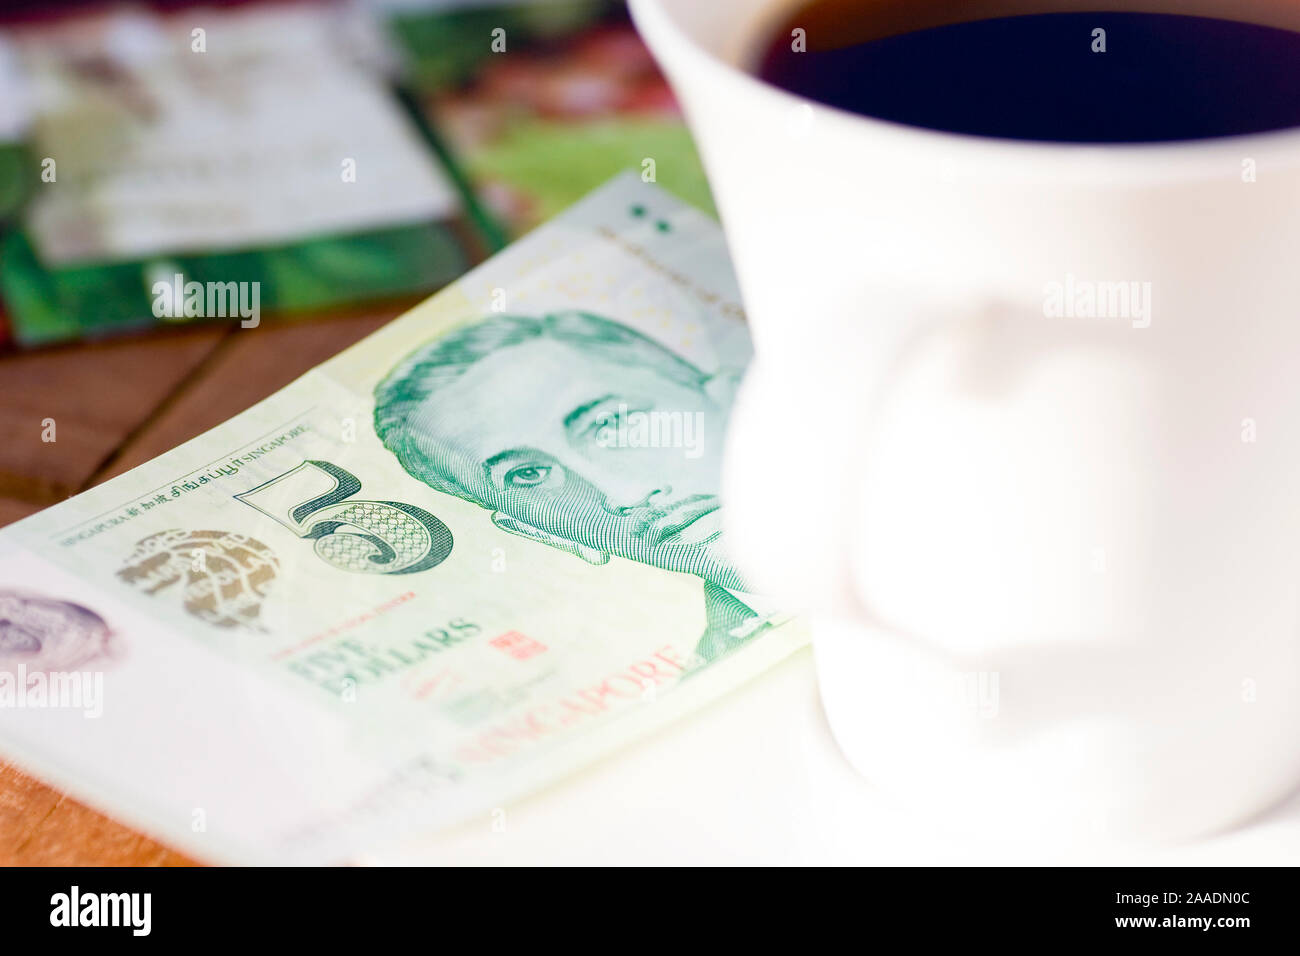 Fünf-Singapur-Dollar Schein neben Kaffeetasse Foto Stock